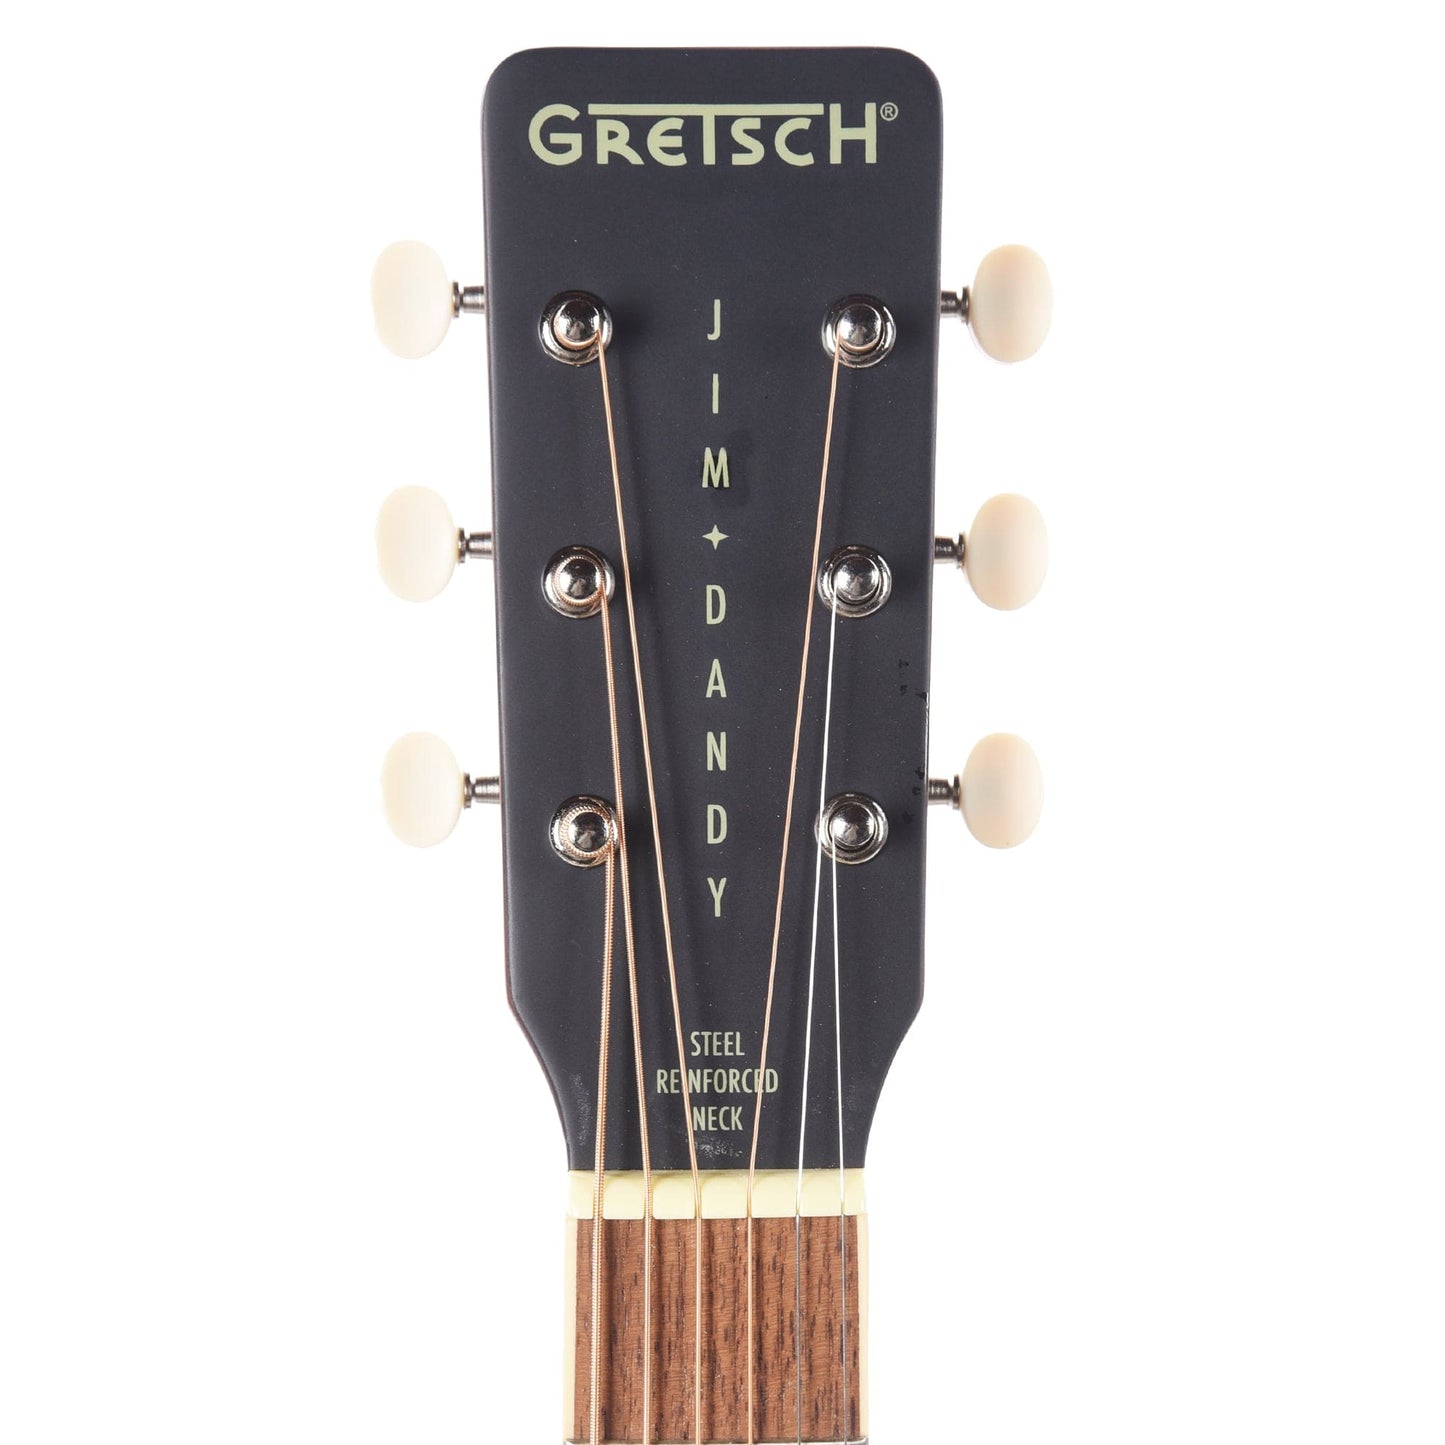 Gretsch Jim Dandy Parlor Acoustic Guitar Rex Burst Acoustic Guitars / Parlor